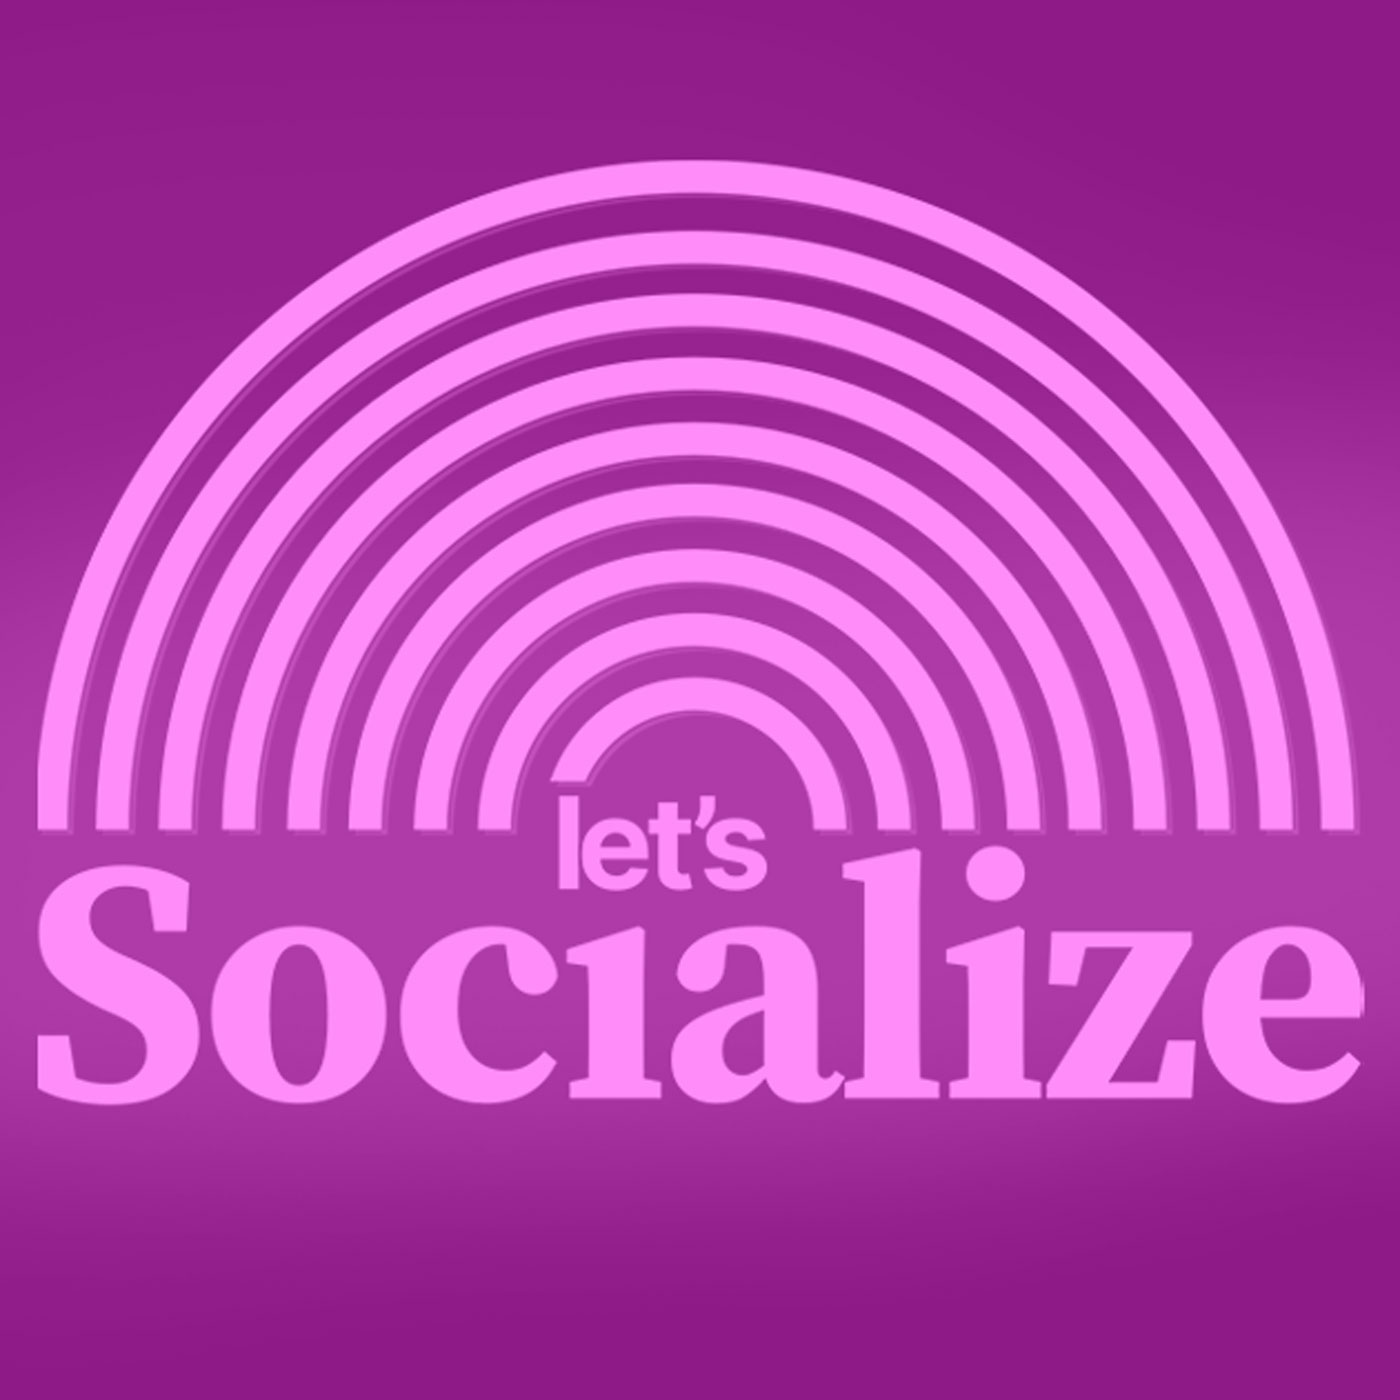 #250 "Let's socialize": Mit Vergesellschaftung zum System Change